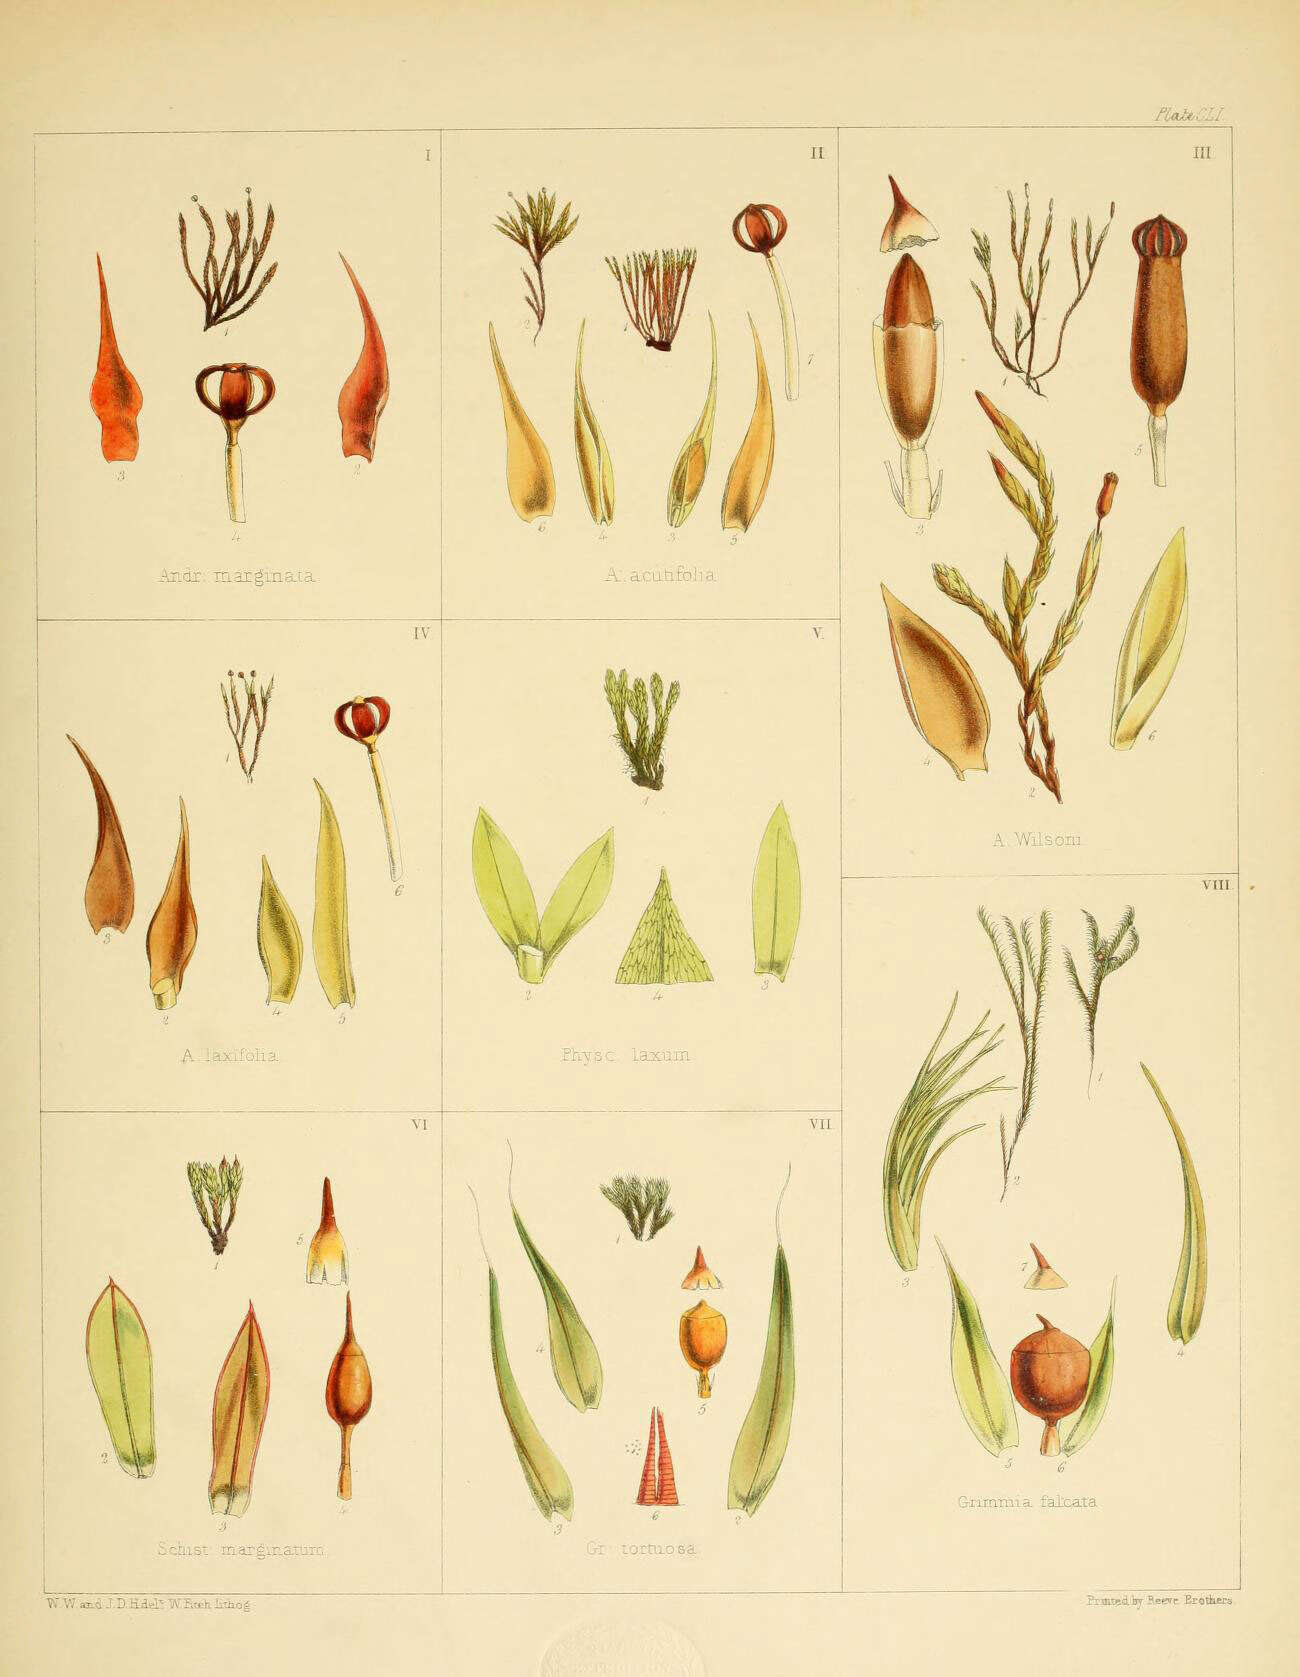 Image de Andreaea marginata J. D. Hooker & Wilson 1844